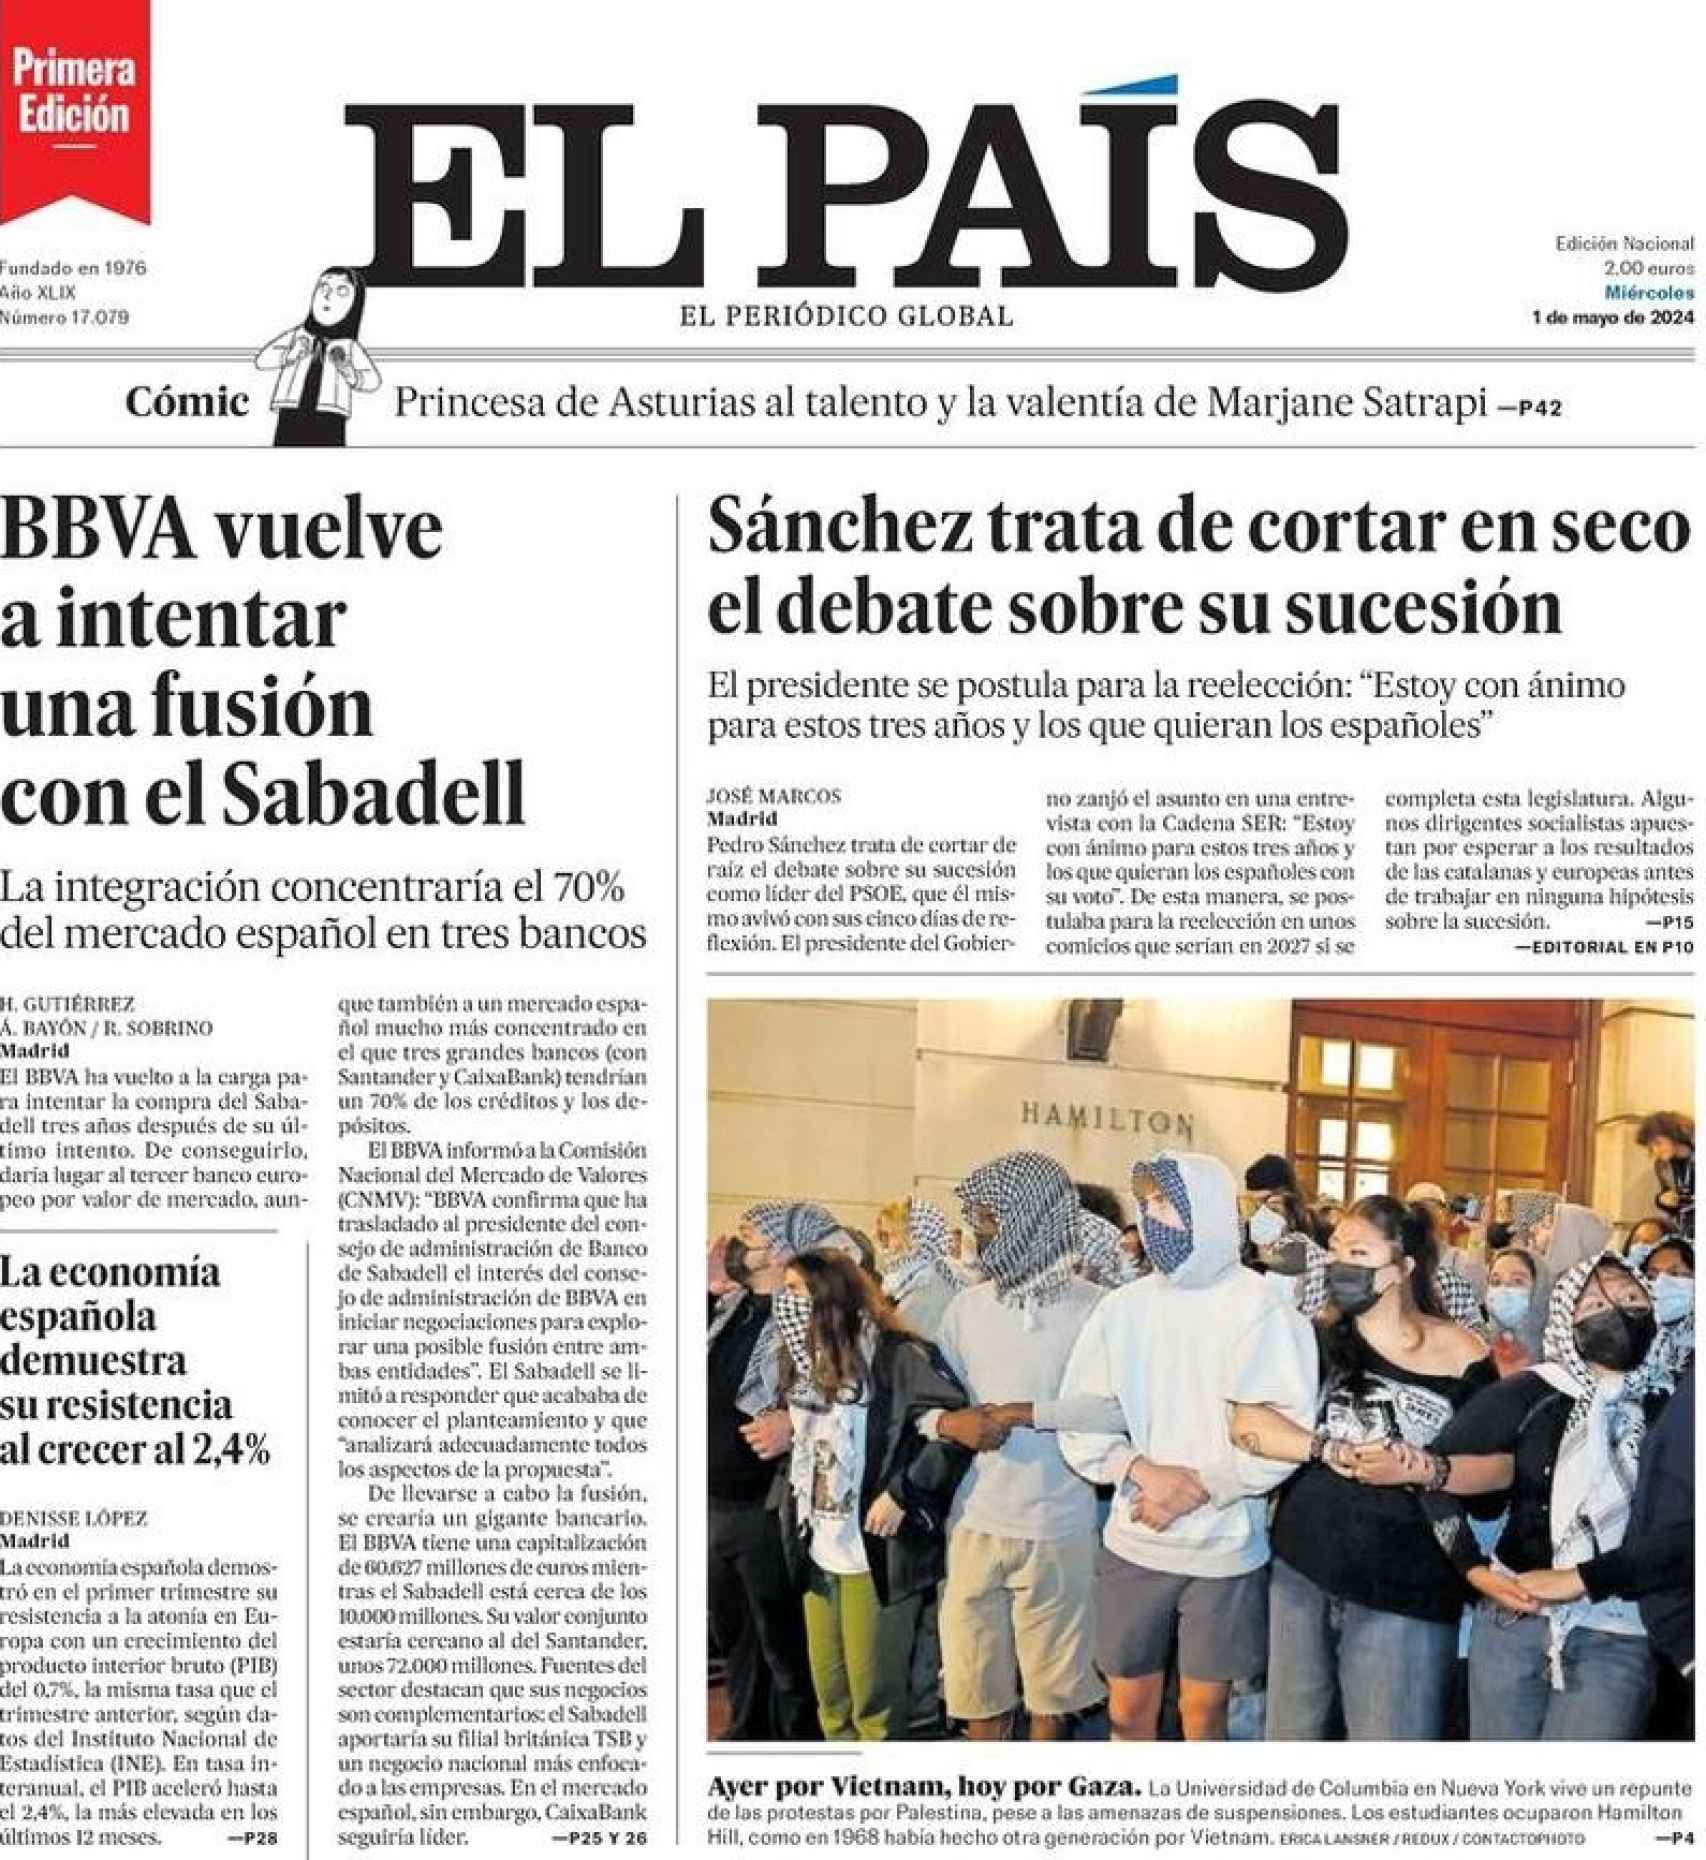 Portada de El País, 1 de mayo de 2024